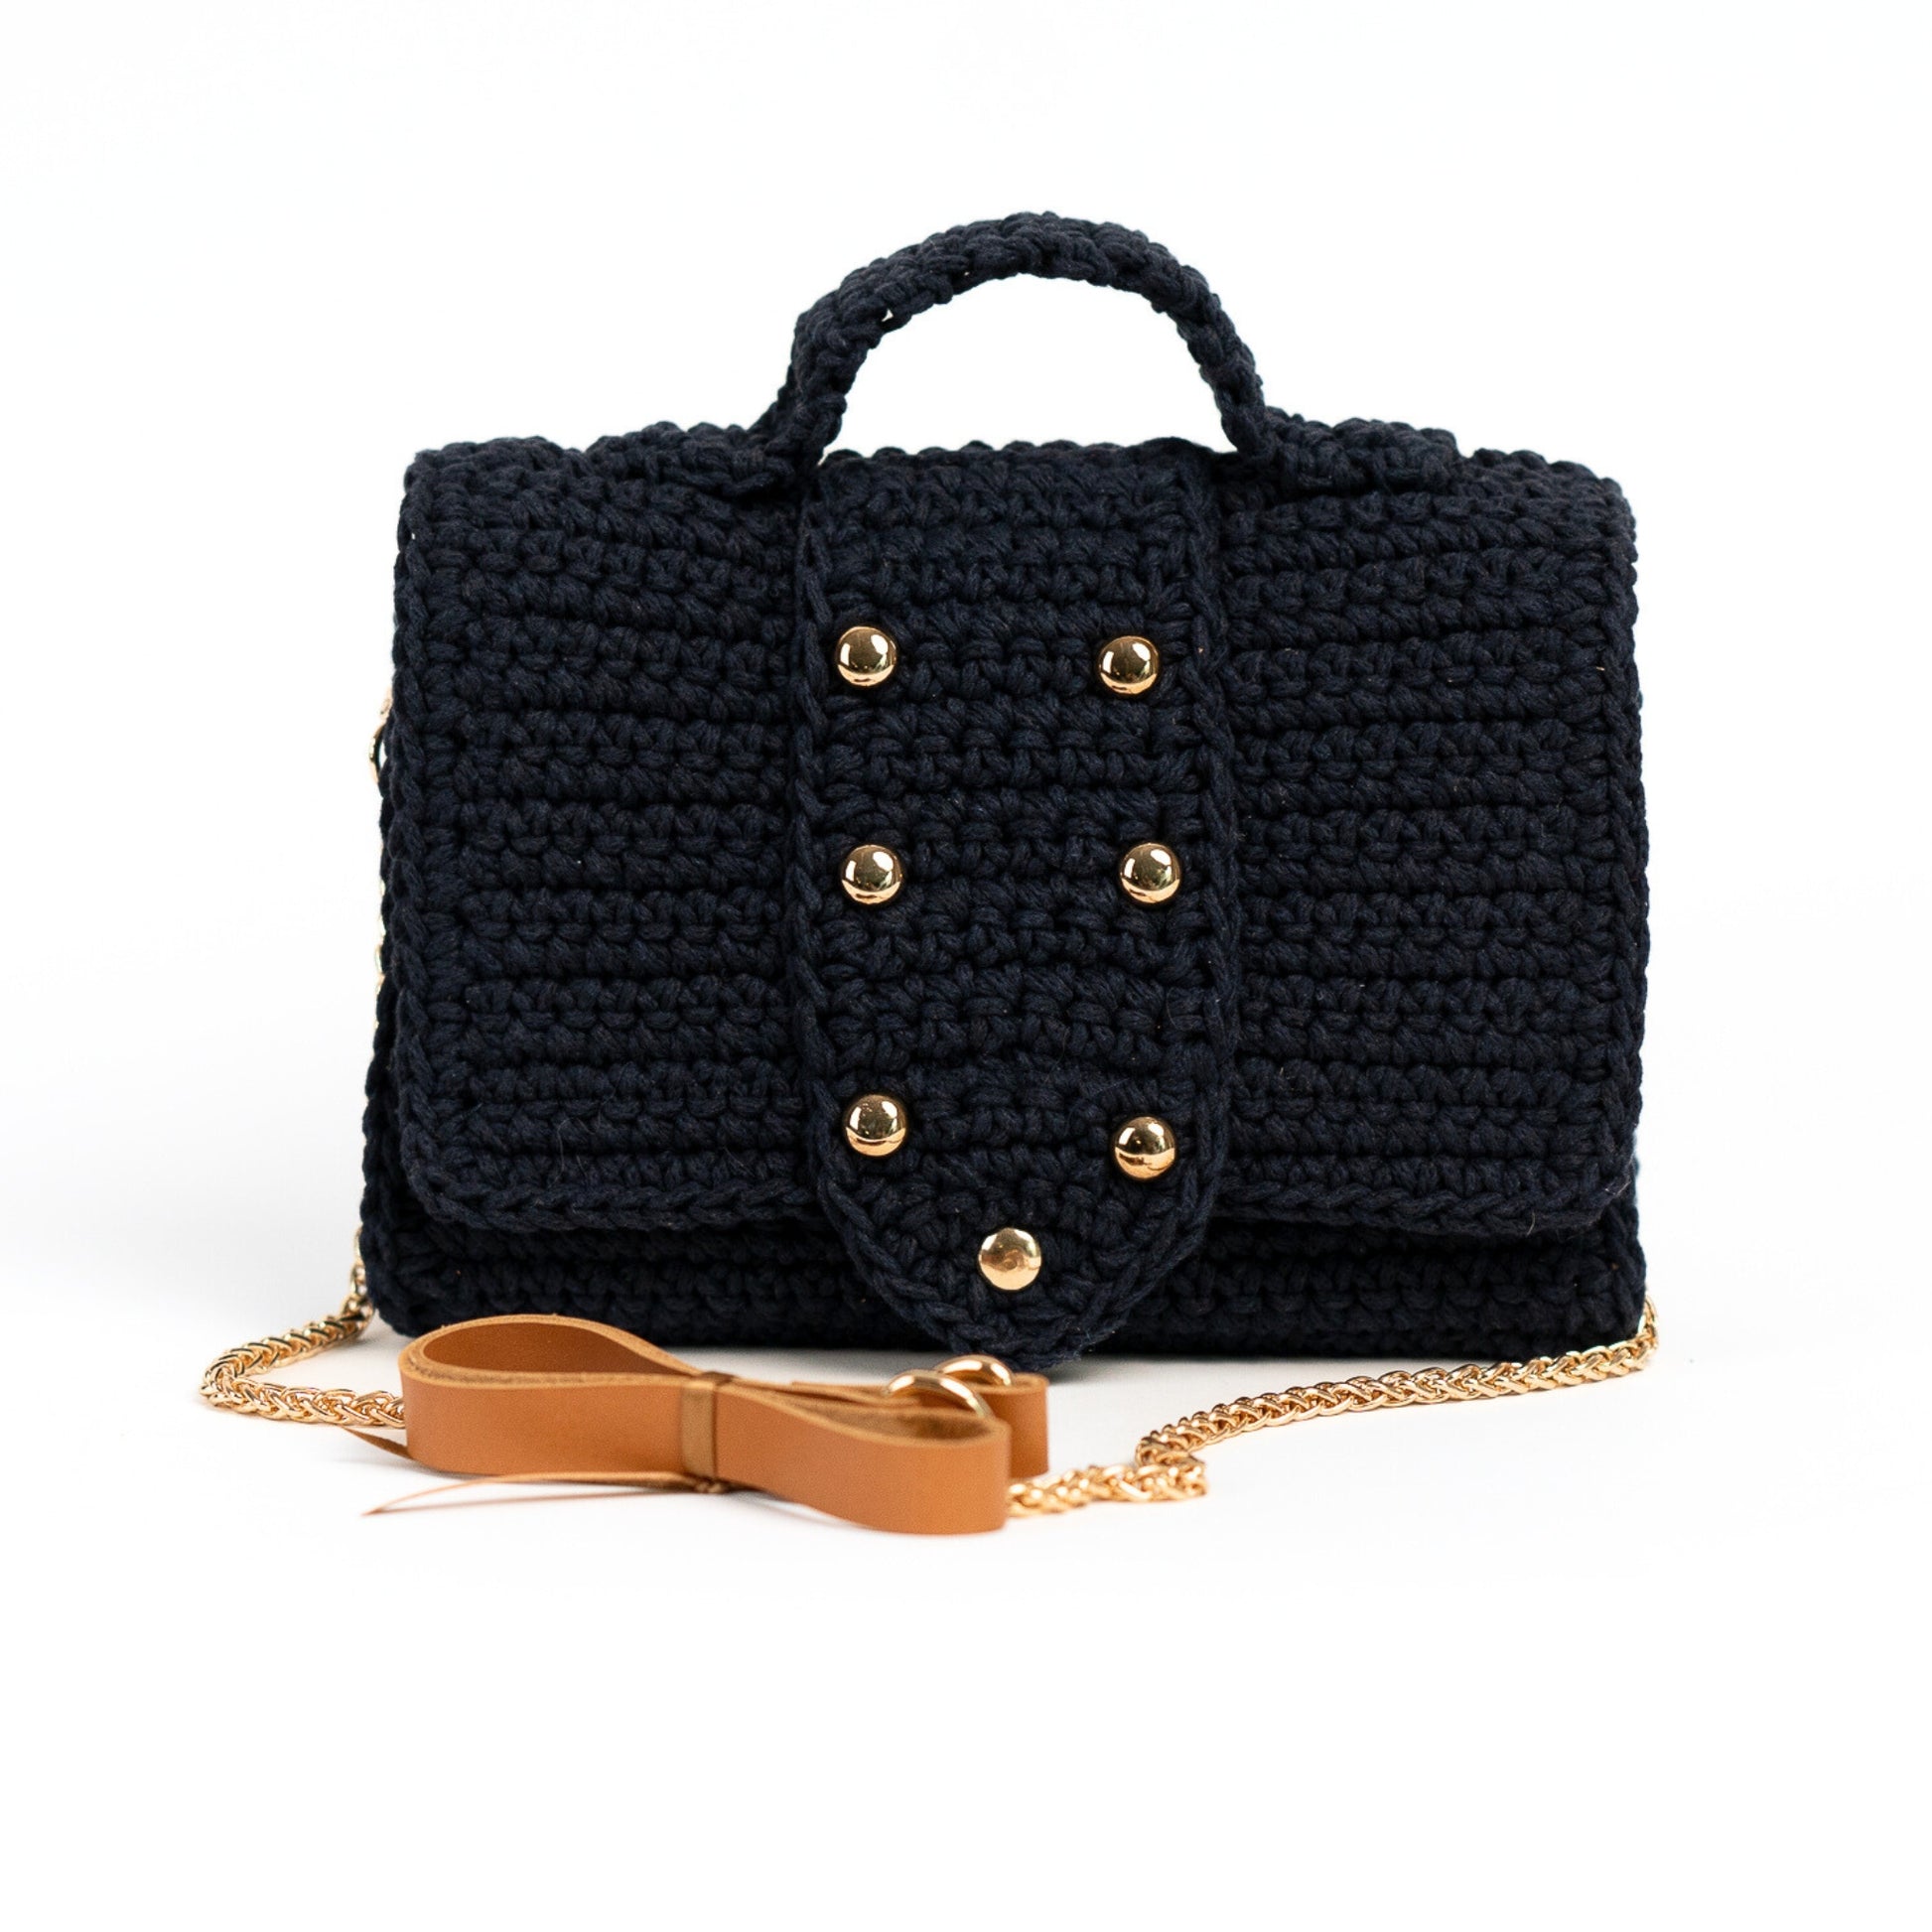 Sac chaine luxe noir De Luxe Femmes Sacs Designer sac bandouliere